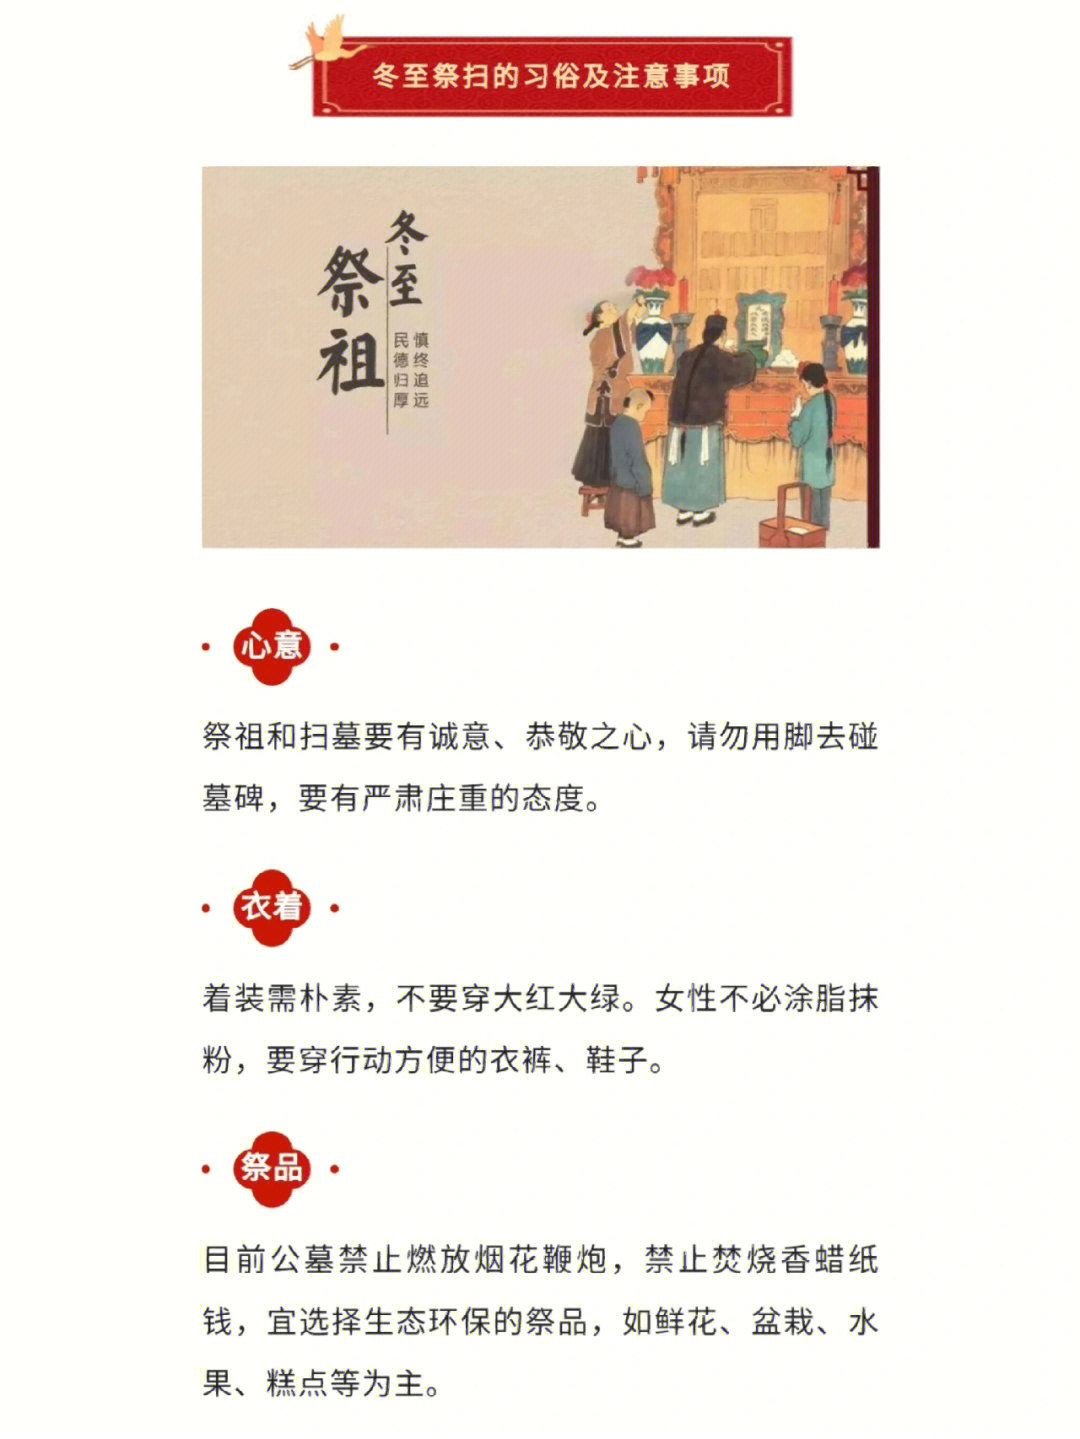 中元节有什么传说_中元节节日传说_中元节的传说和来历